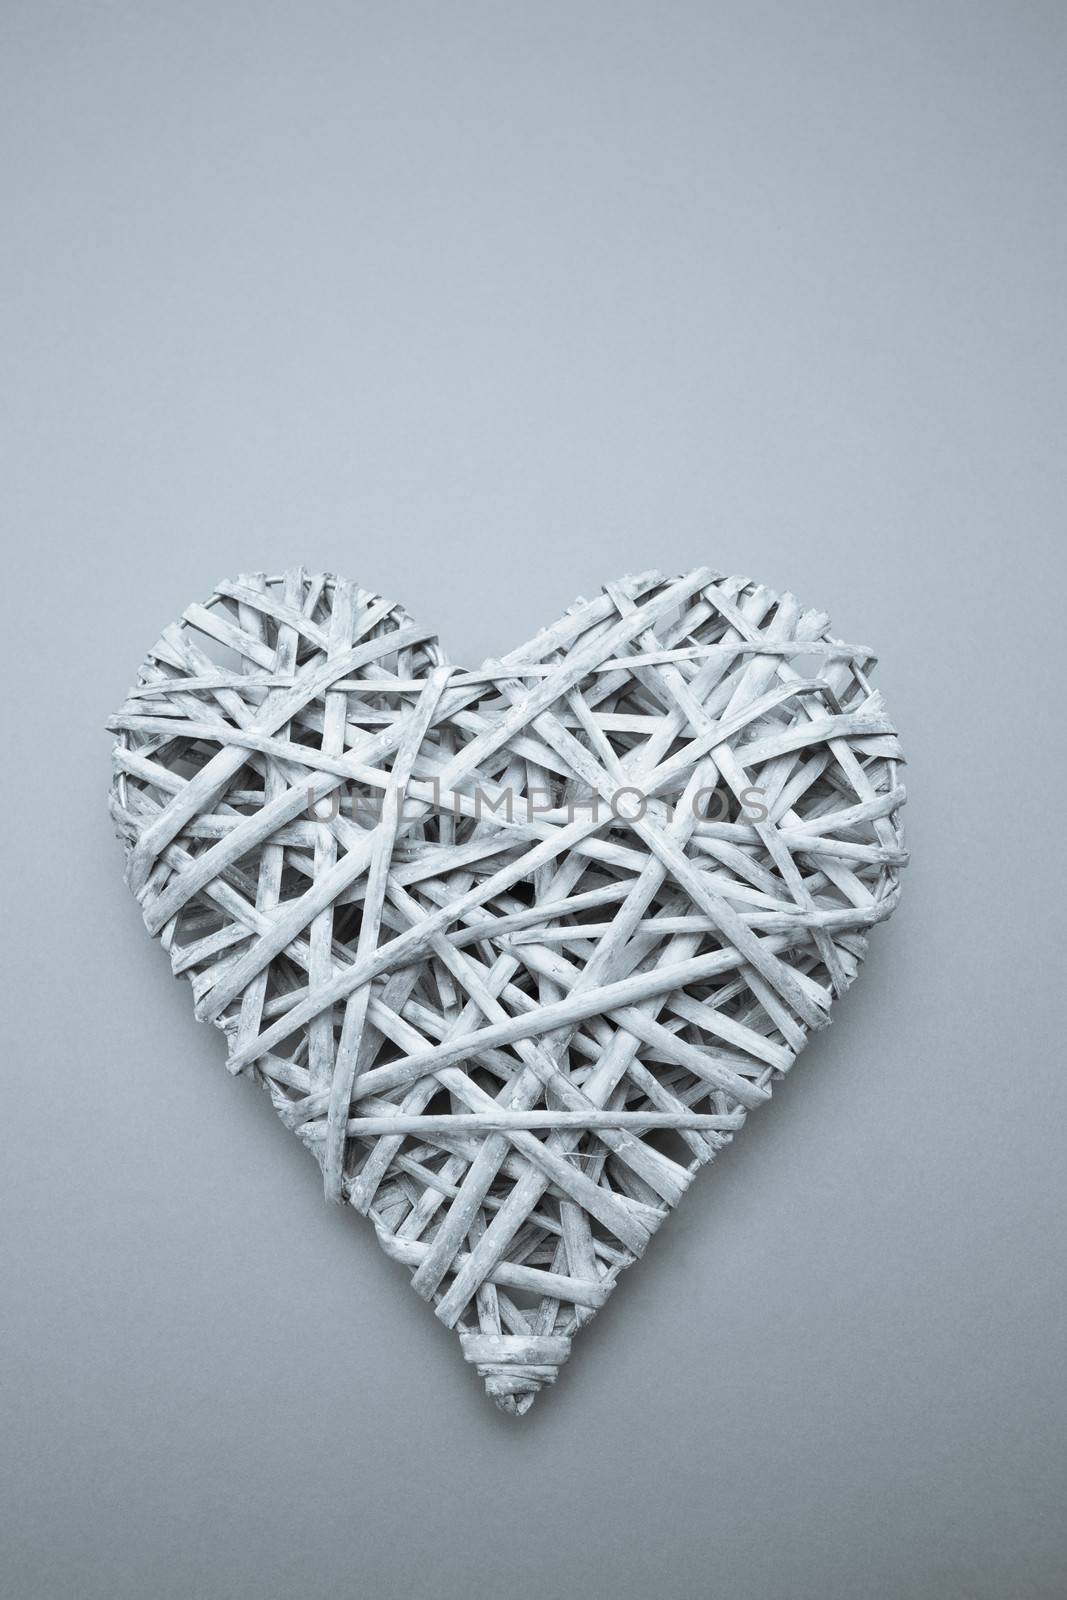 Wicker heart ornament by Wavebreakmedia